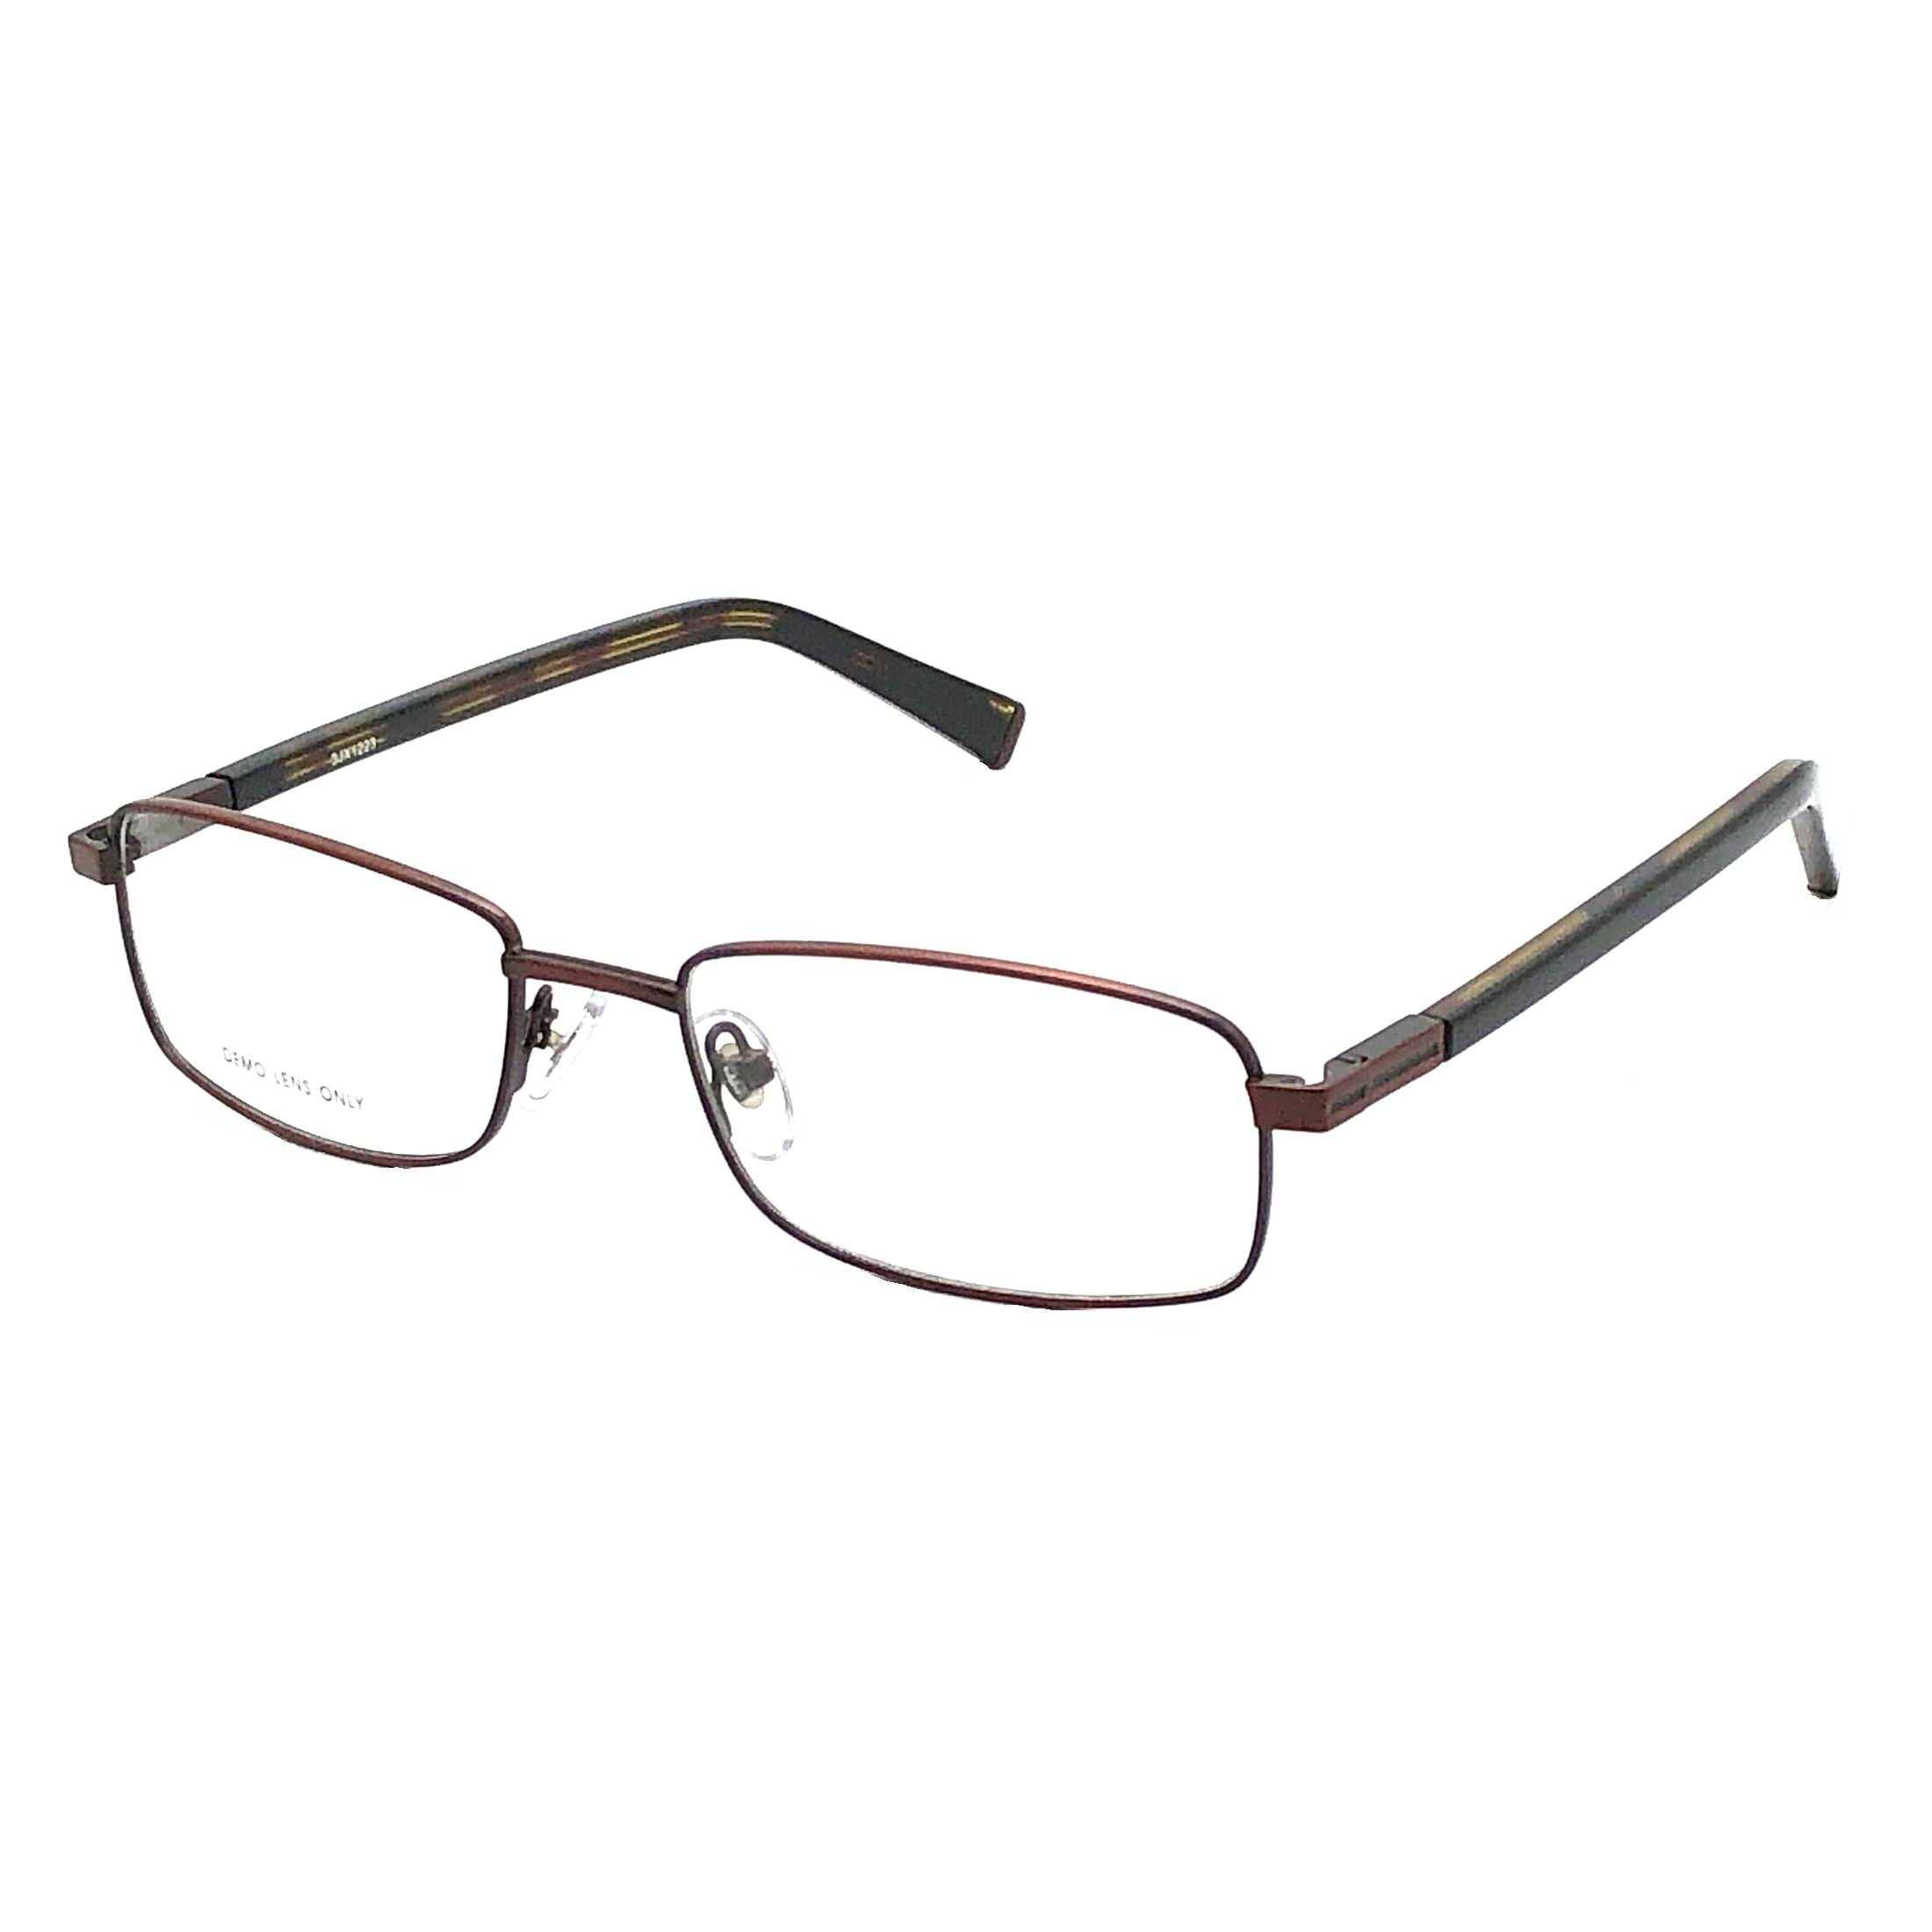 Designer Looks for Less Men's Prescription Eyeglasses, FM9210, Dark ...